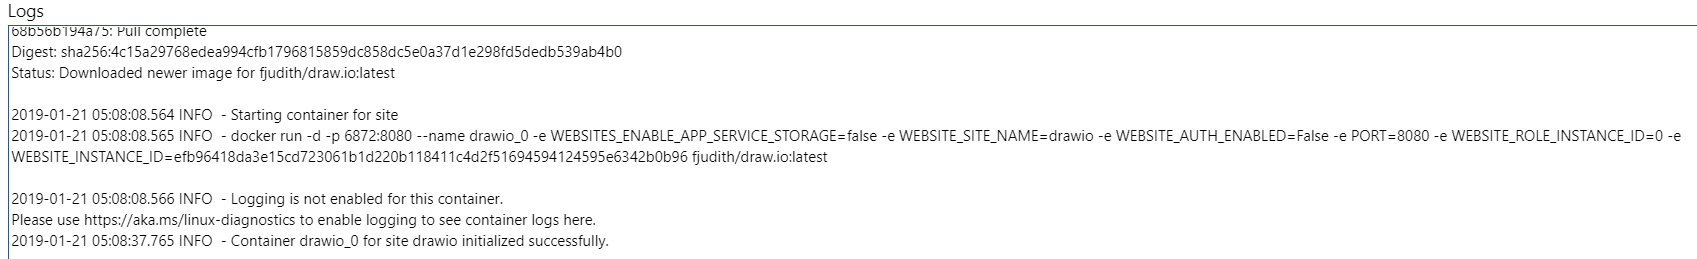 Docker image pull logs